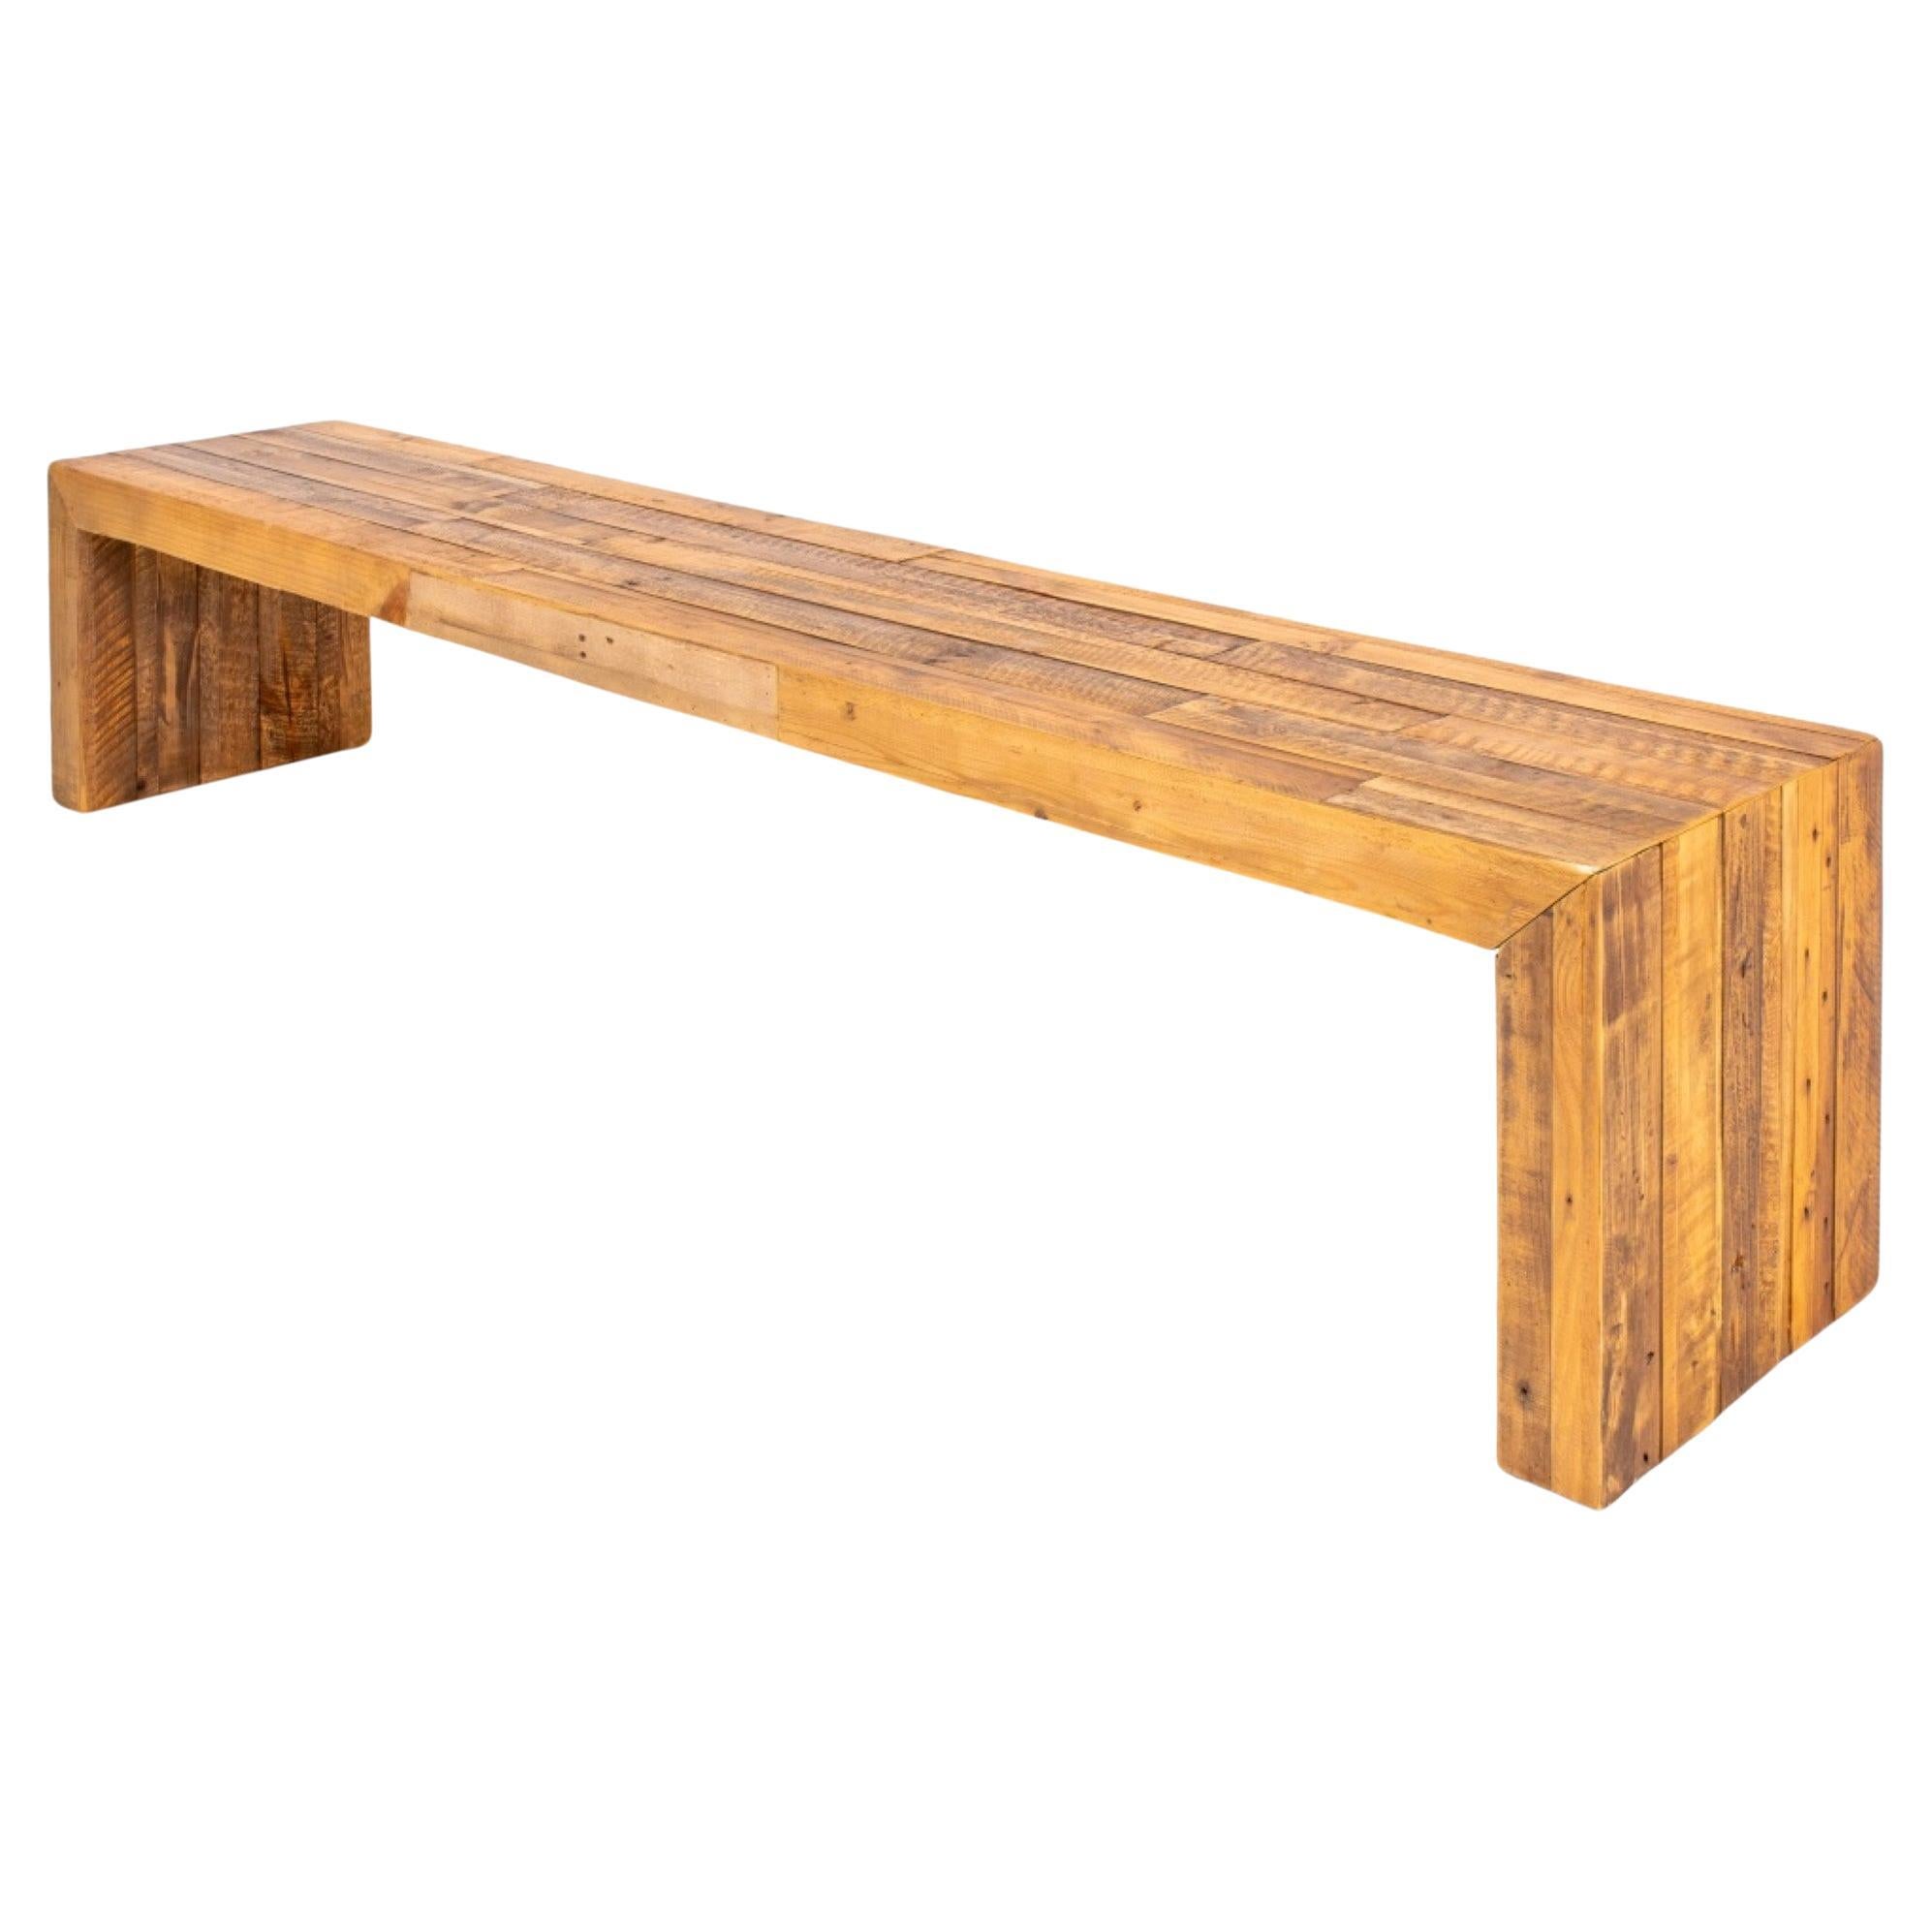 KT Rustic Oak Hardwood Long Bench For Sale